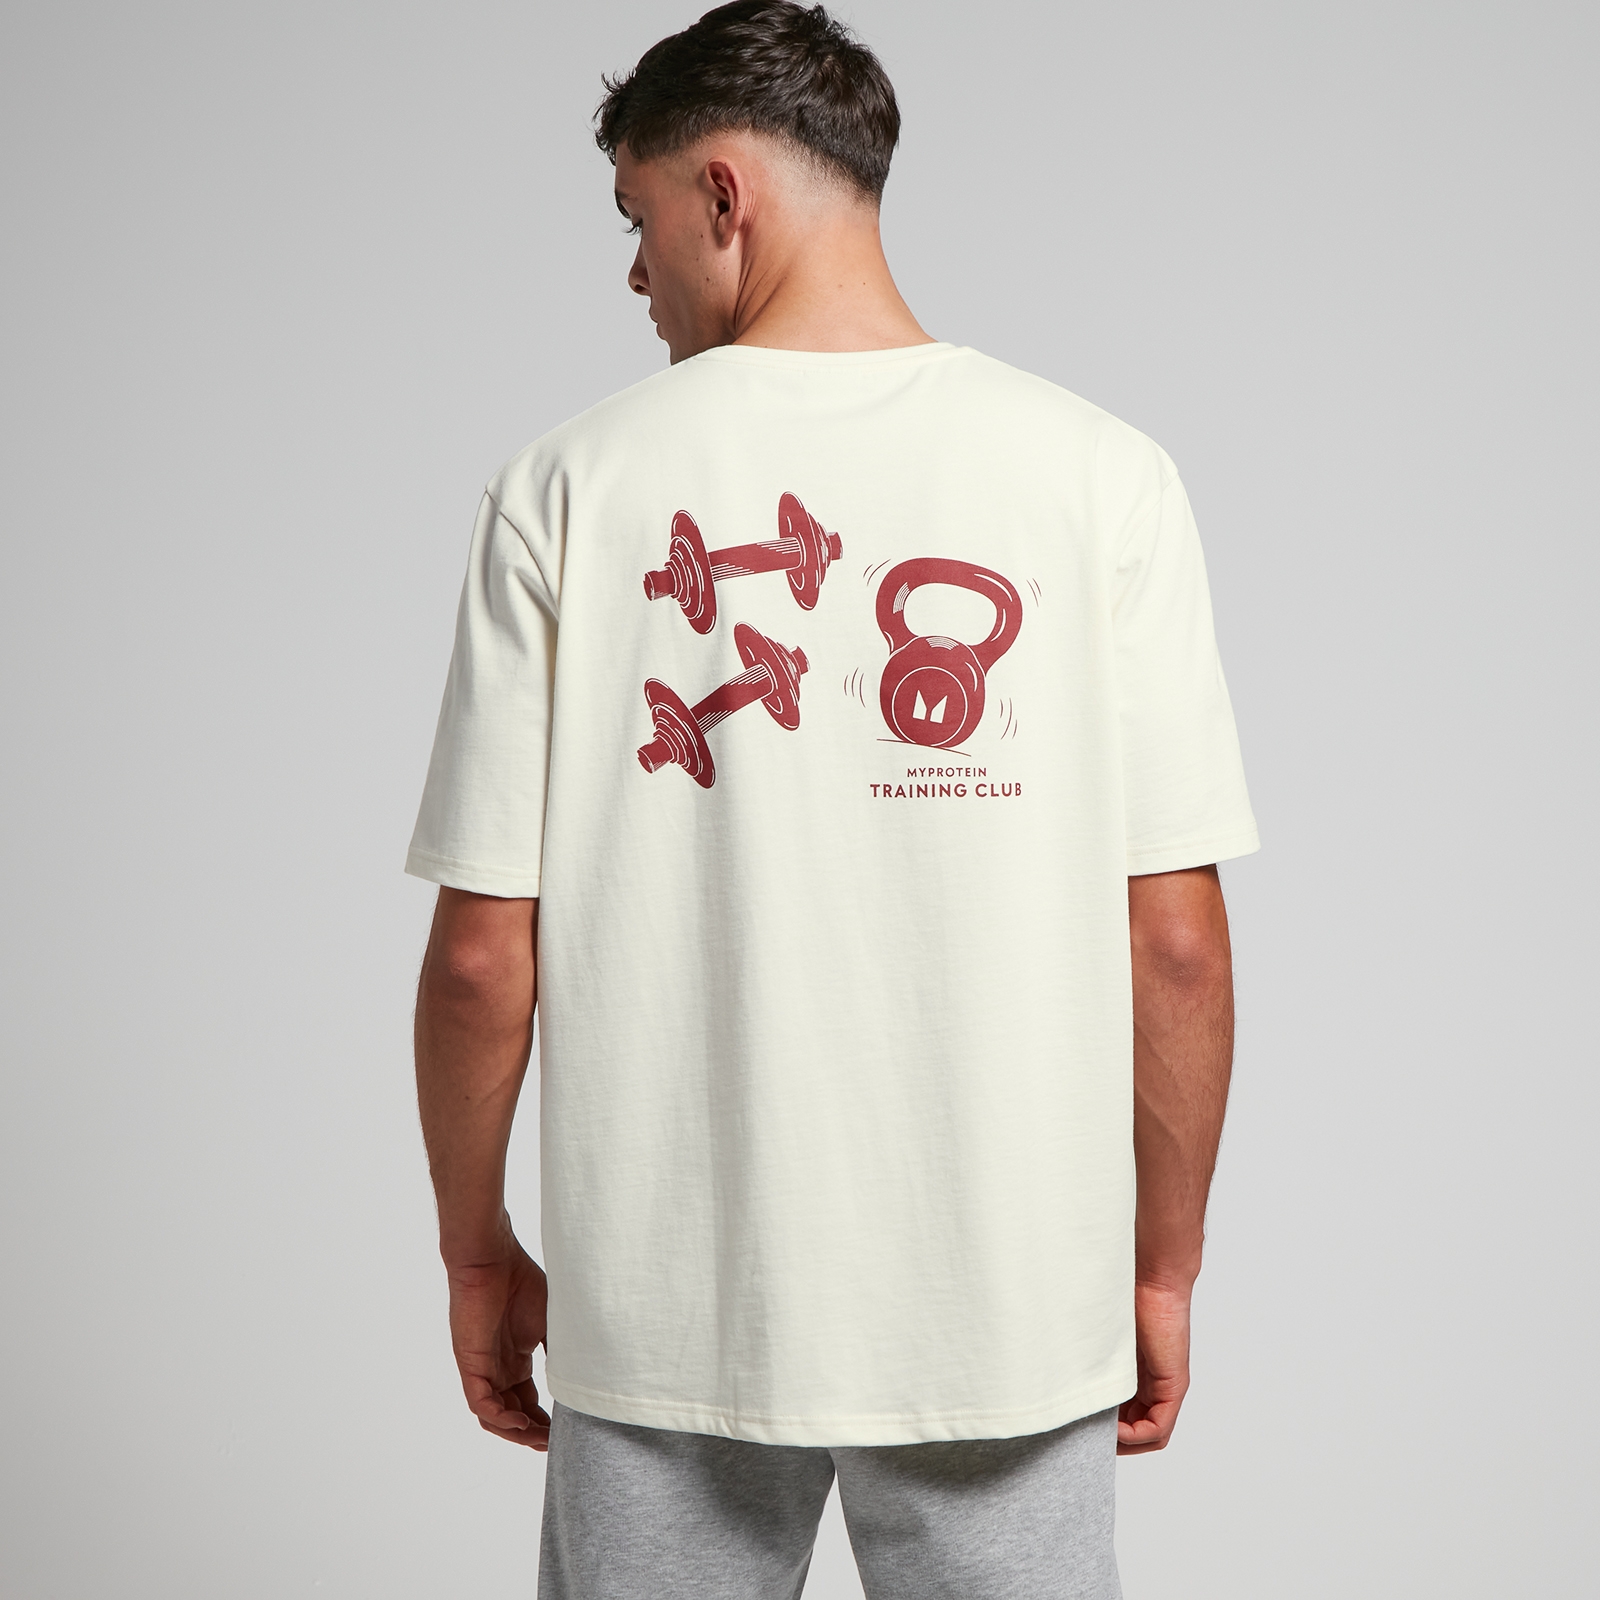 Camiseta extragrande con gráfico Tempo para hombre de MP - Blanco roto/estampado rojo - L